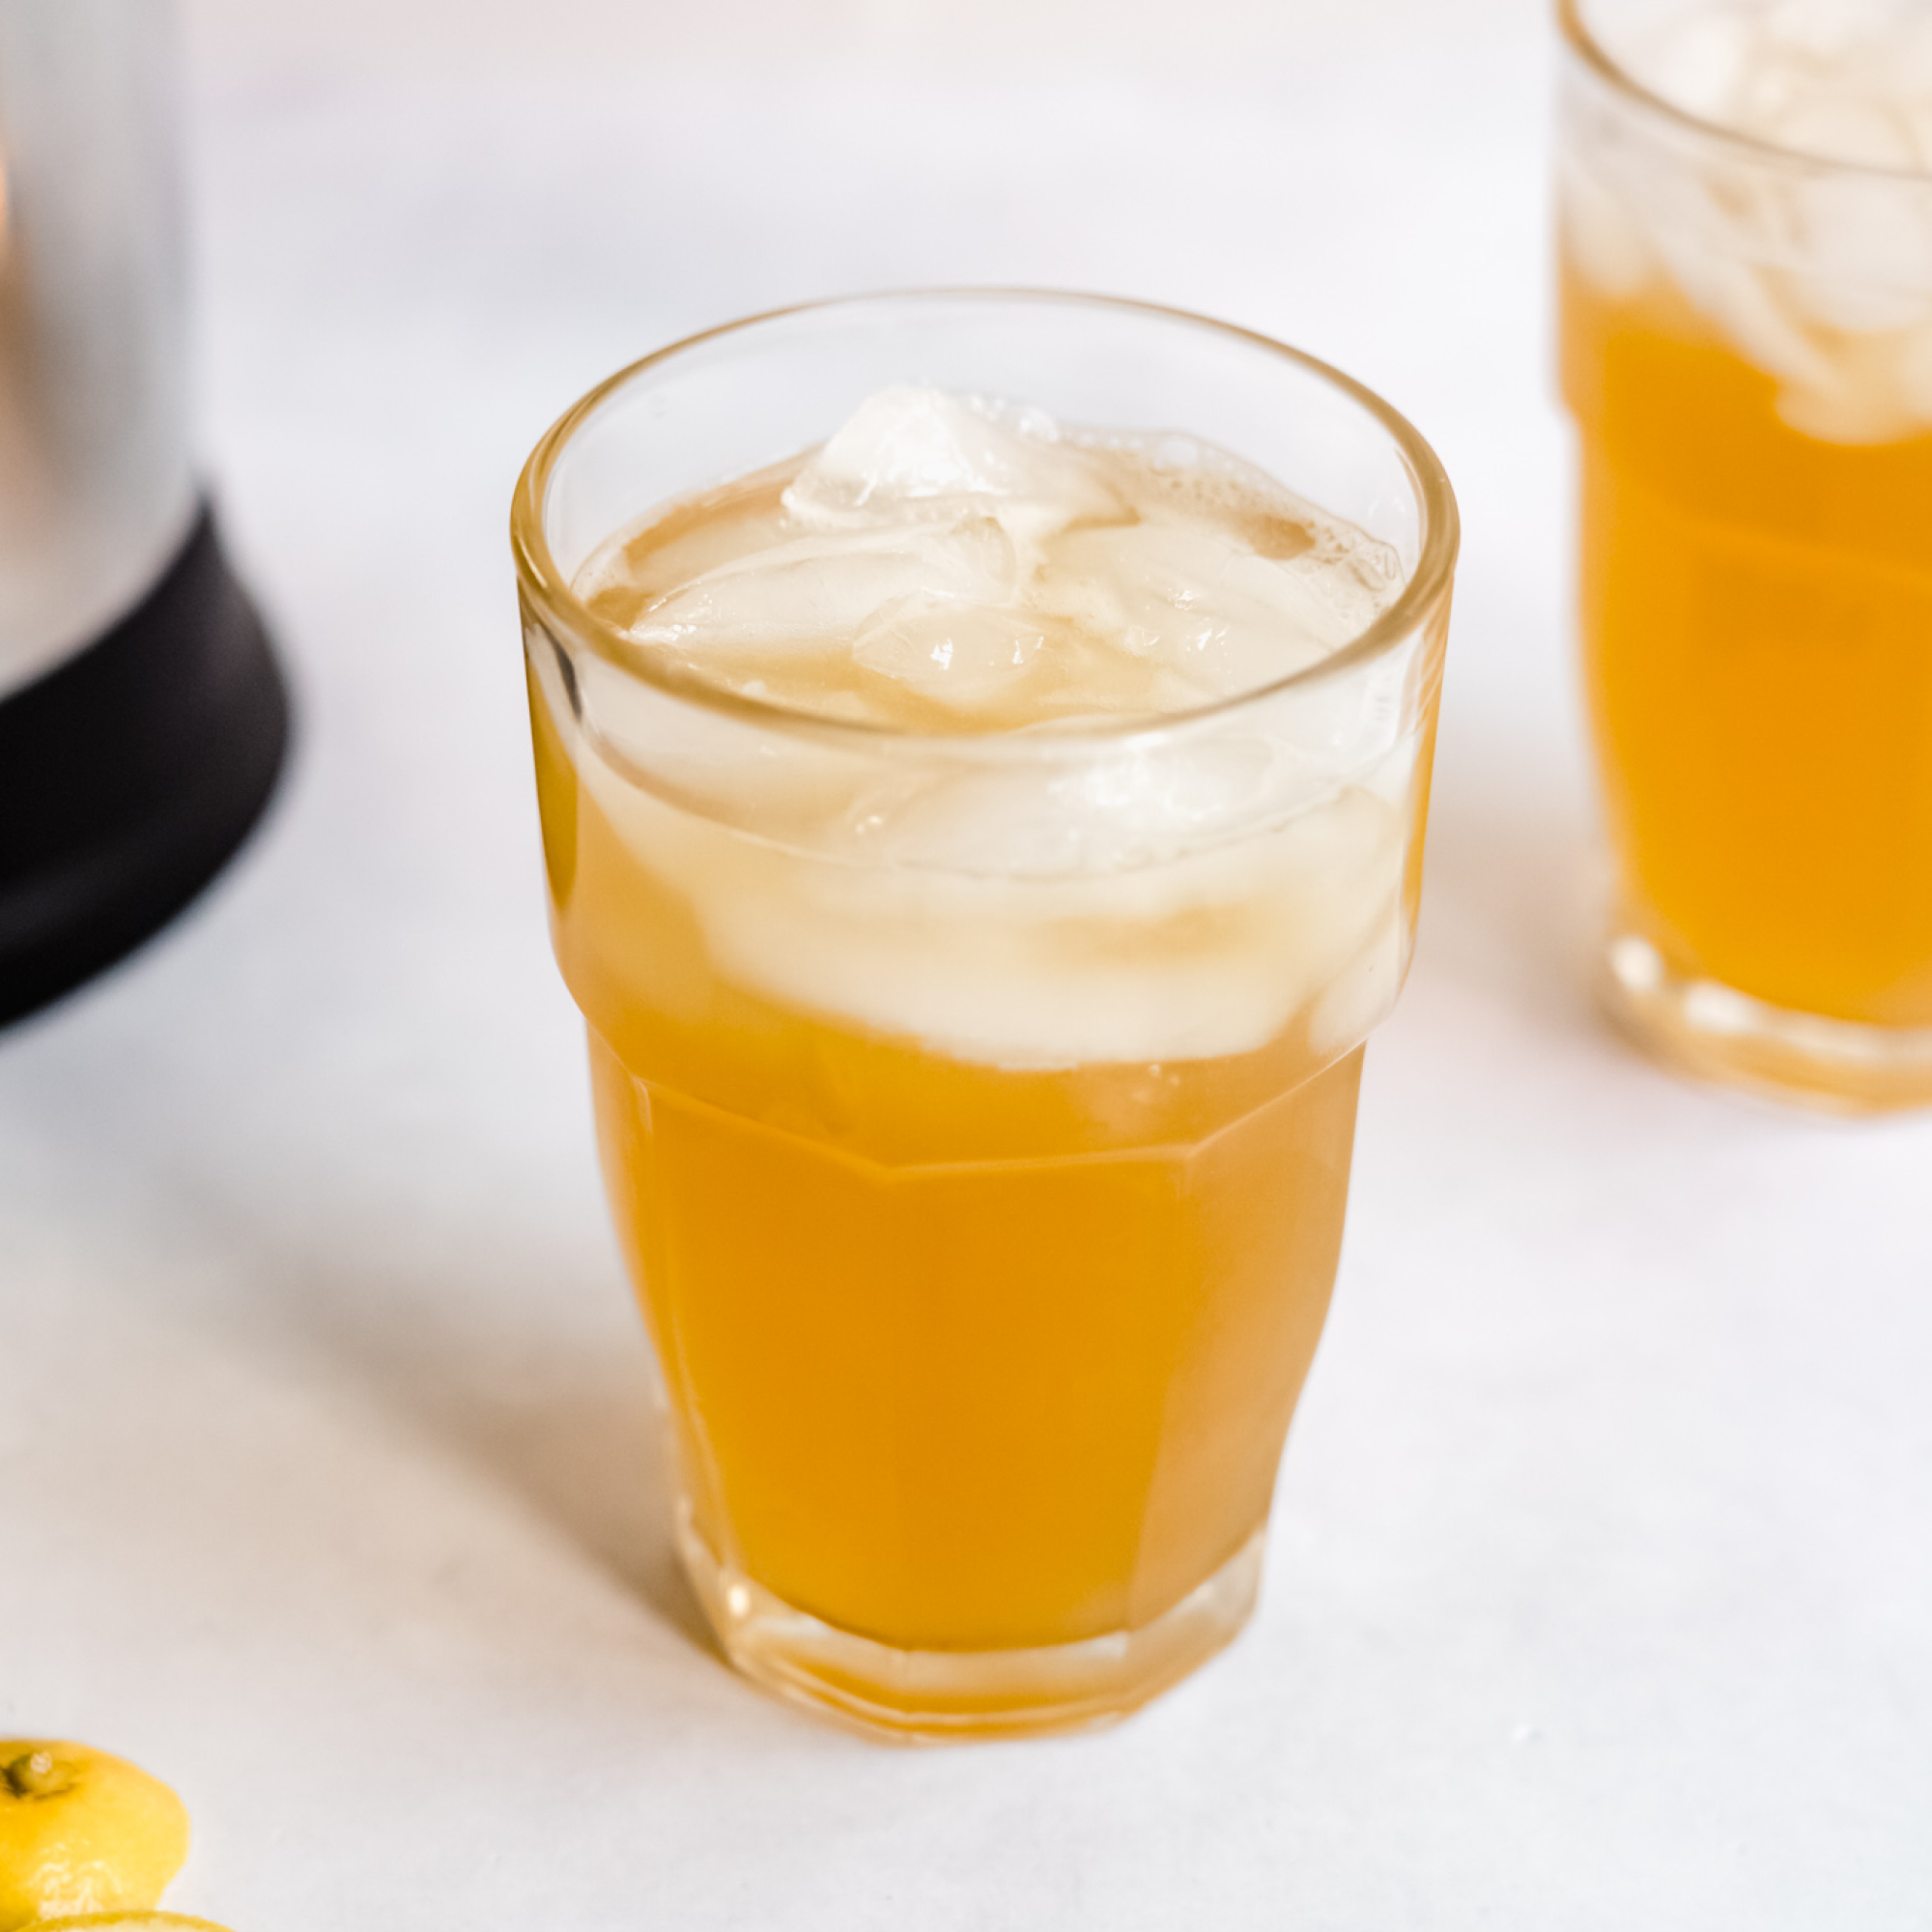 Refreshing Irish Whiskey Lemonade cocktail prepared with Almond Cow machine